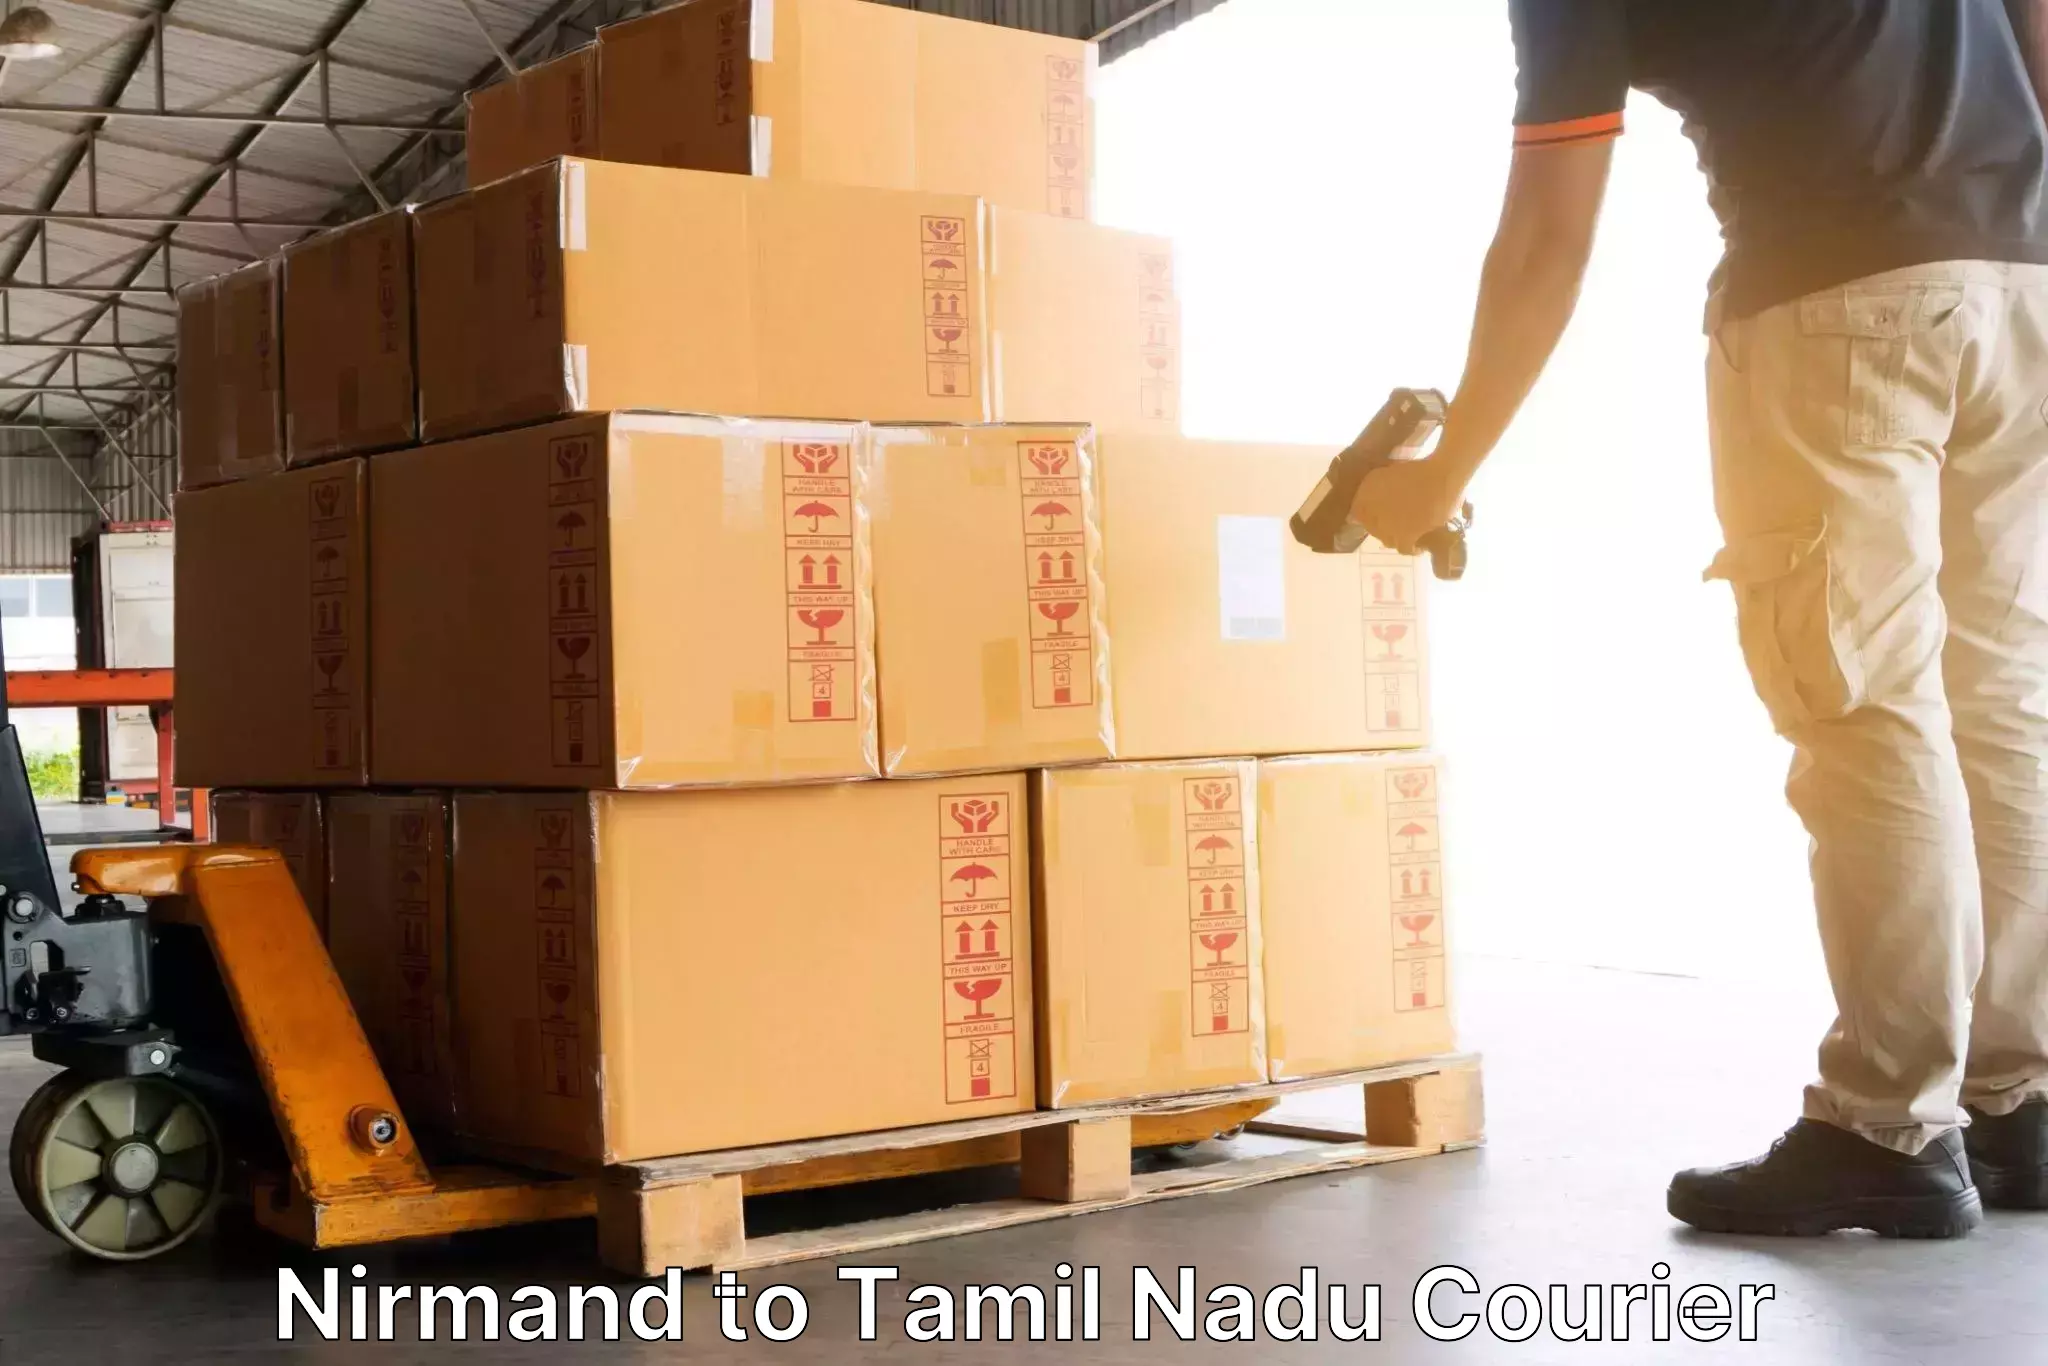 Pharmaceutical courier Nirmand to Thiruvadanai